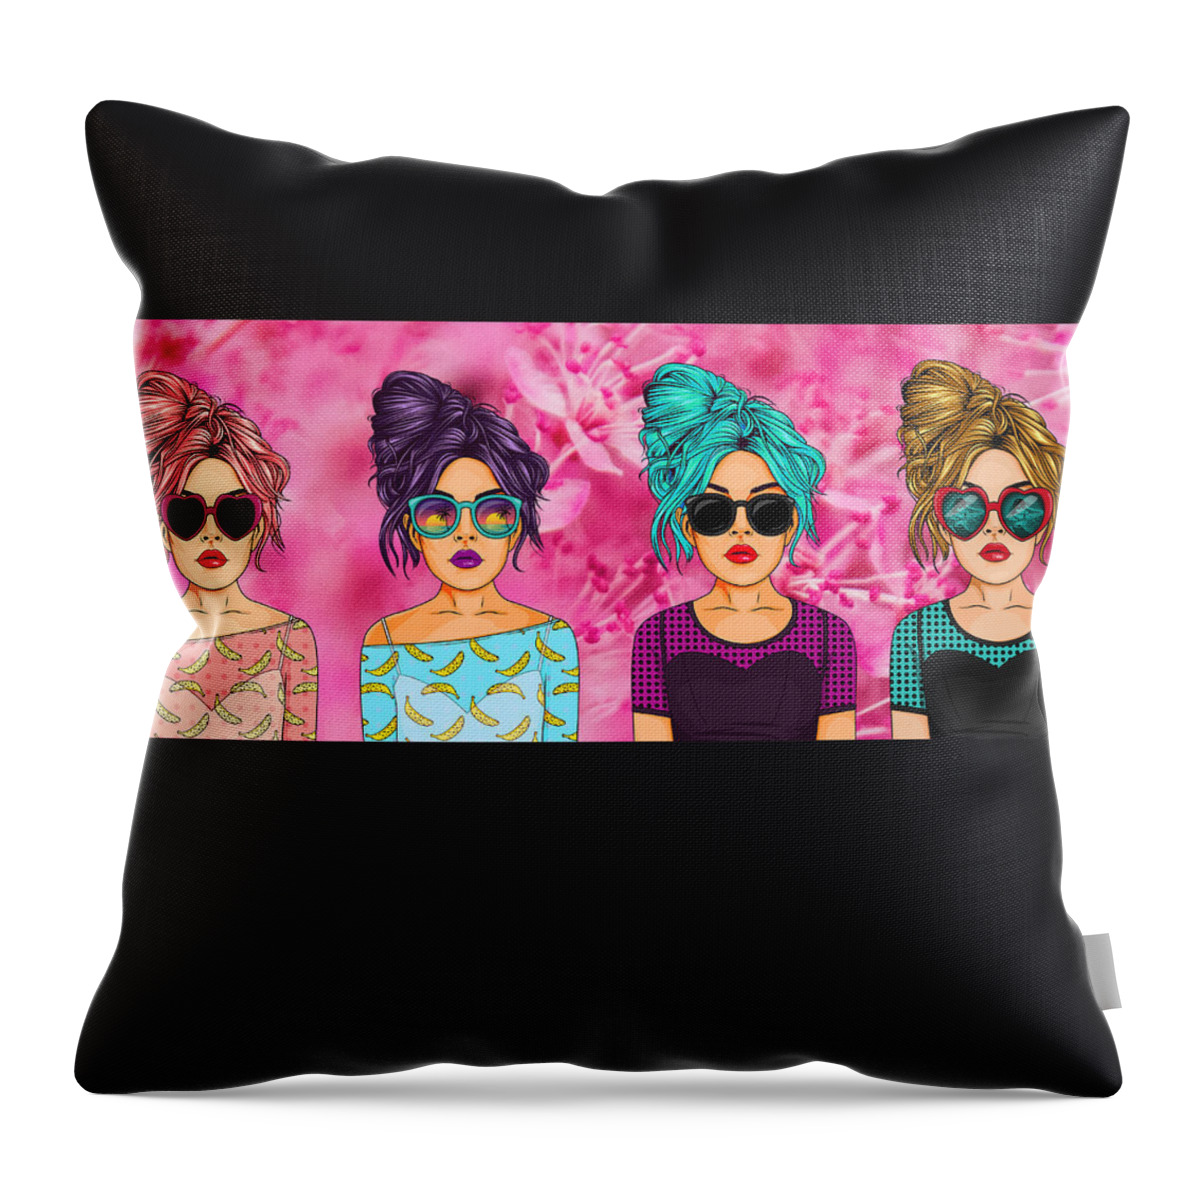 Pop Art Throw Pillow featuring the digital art Pop Art Pink Pop by Caterina Christakos